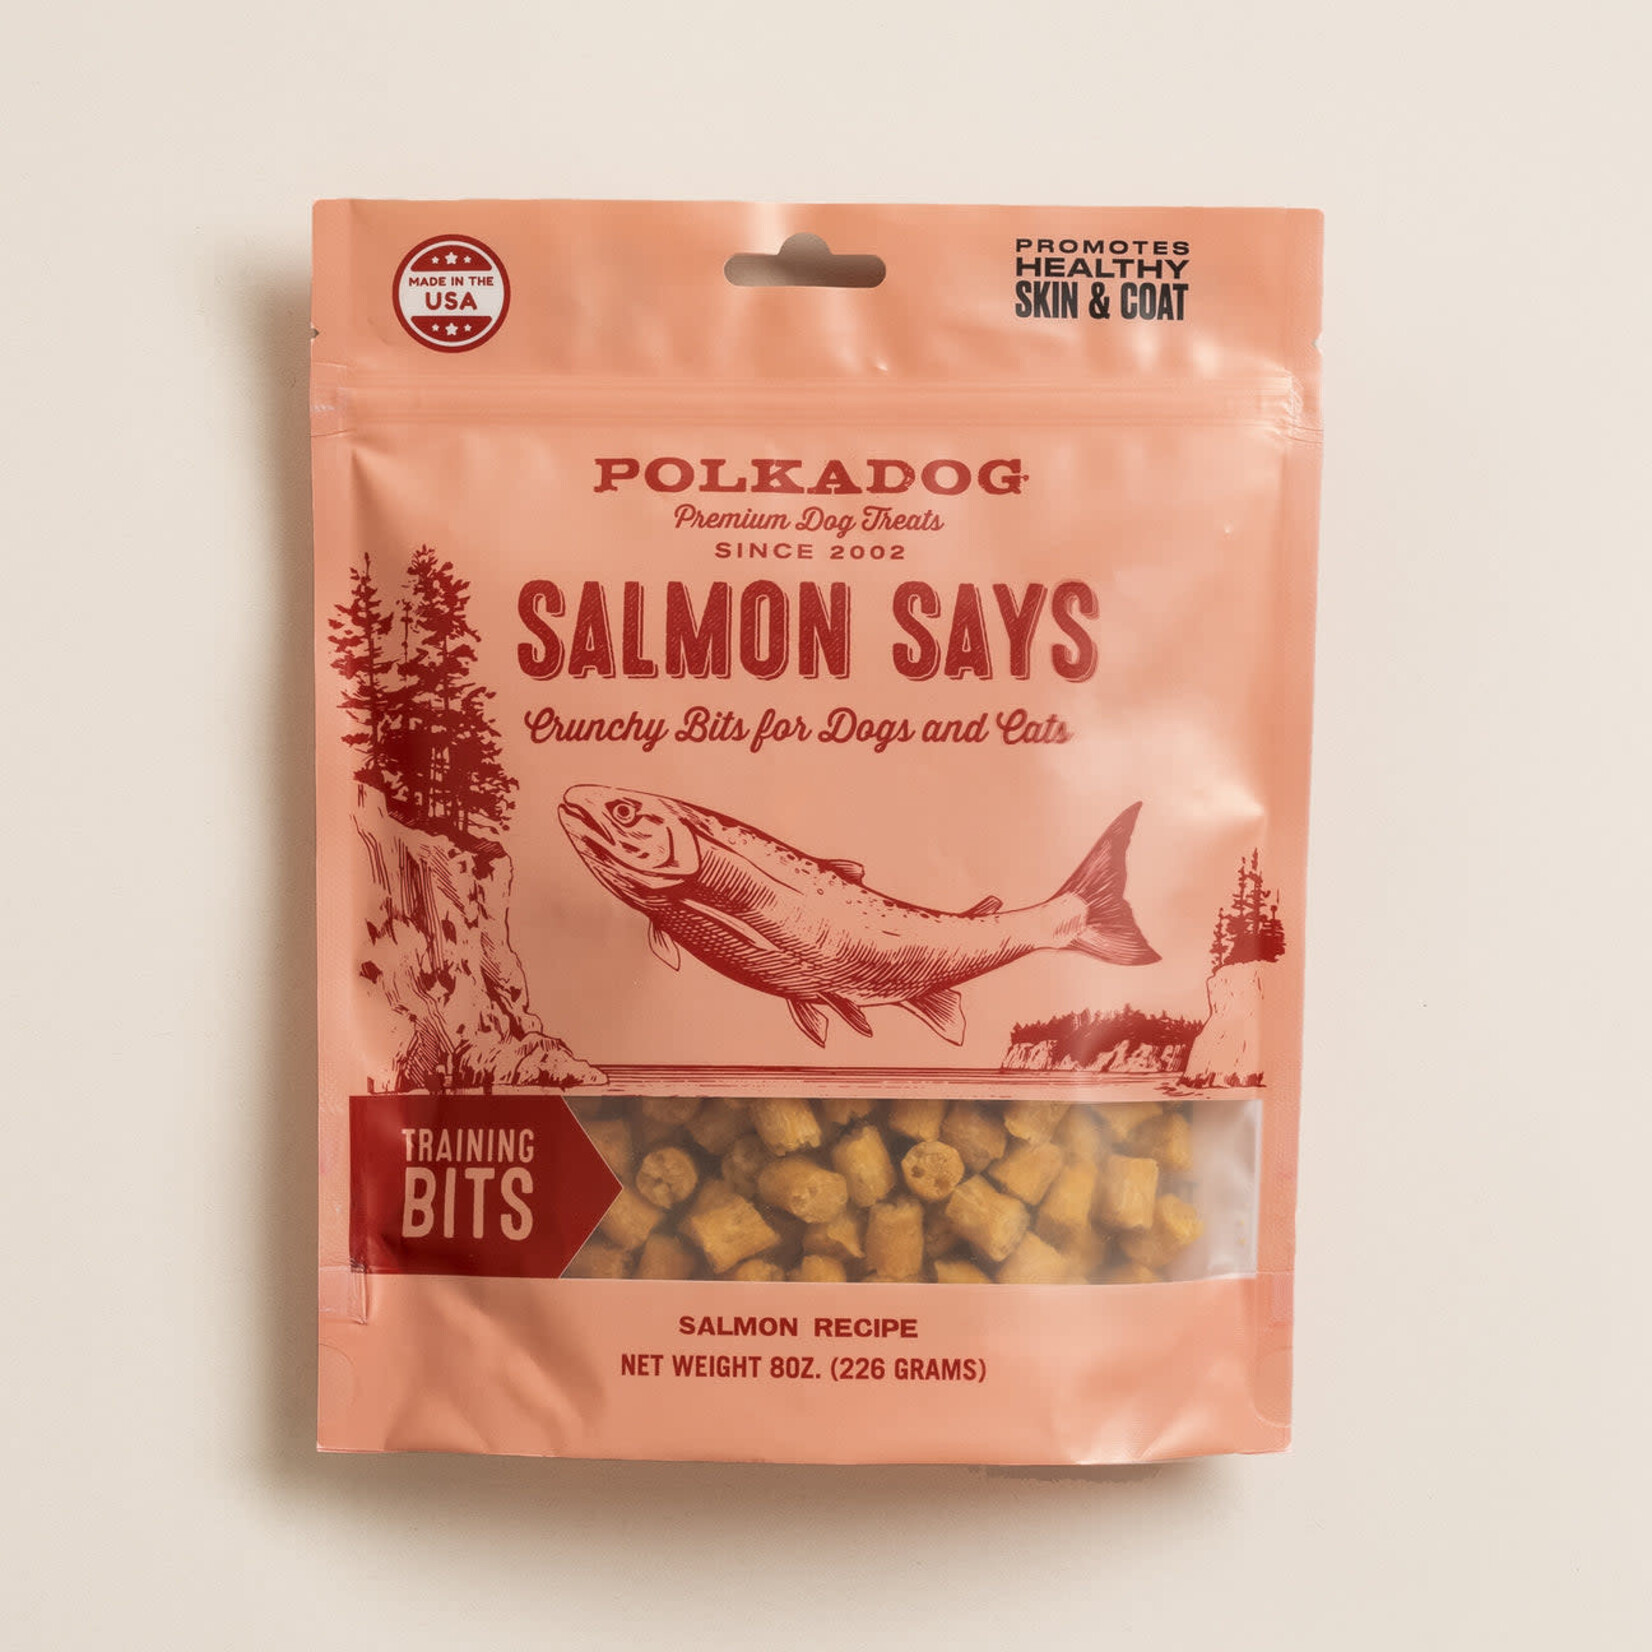 Polkadog Salmon Says Training Bits